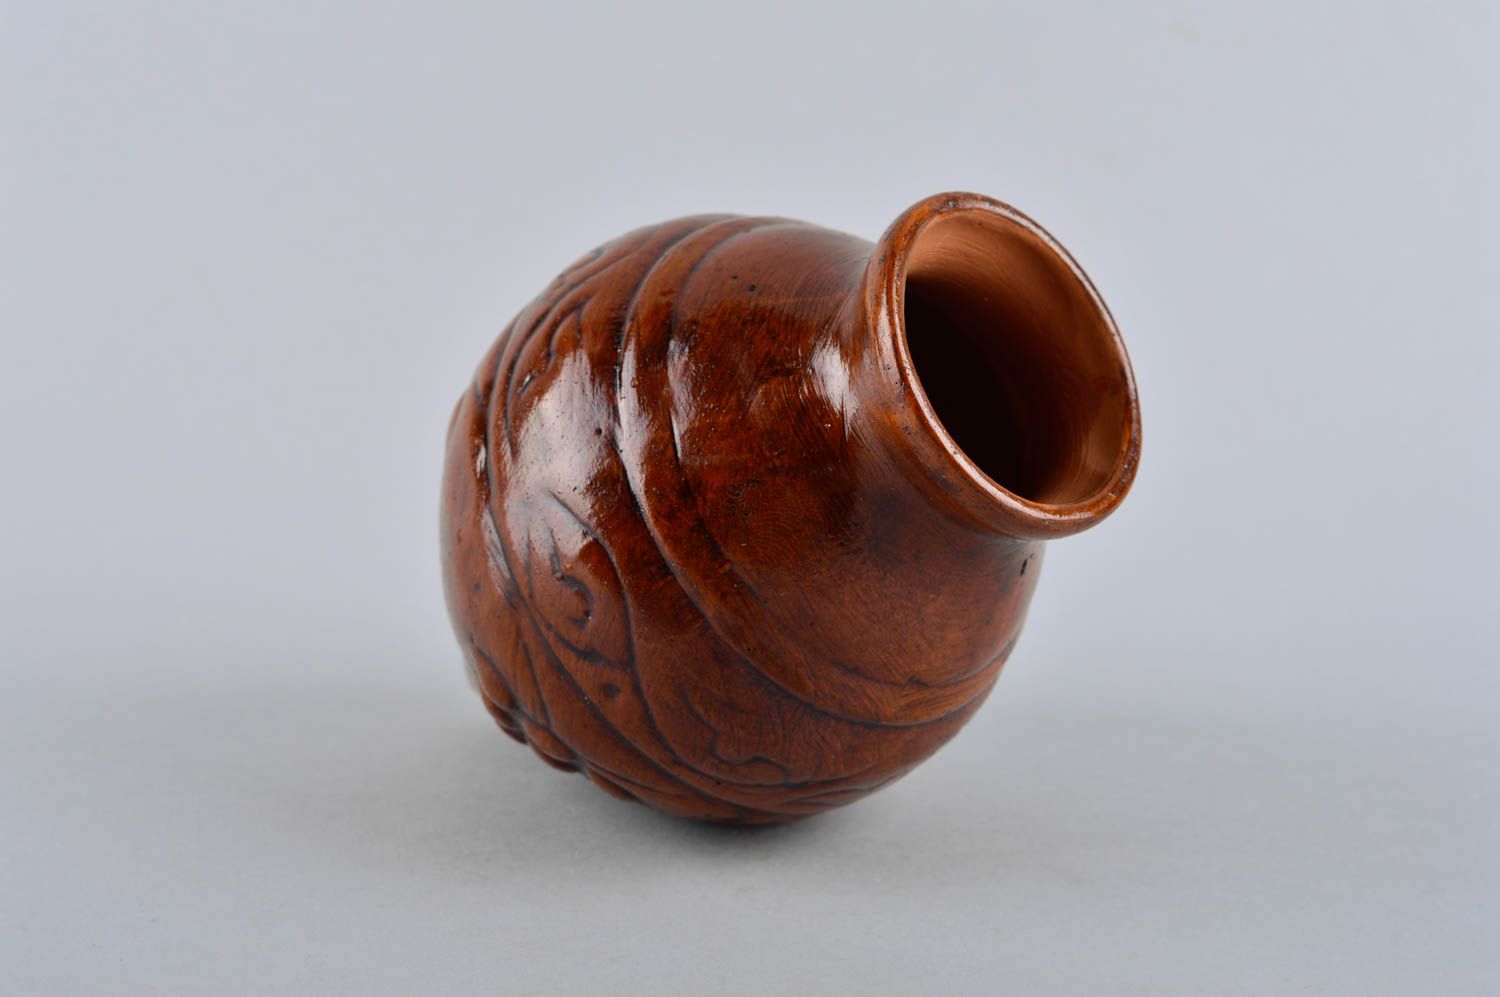 15 oz ceramic shelf decorative pitcher for home décor 0,6 lb photo 3